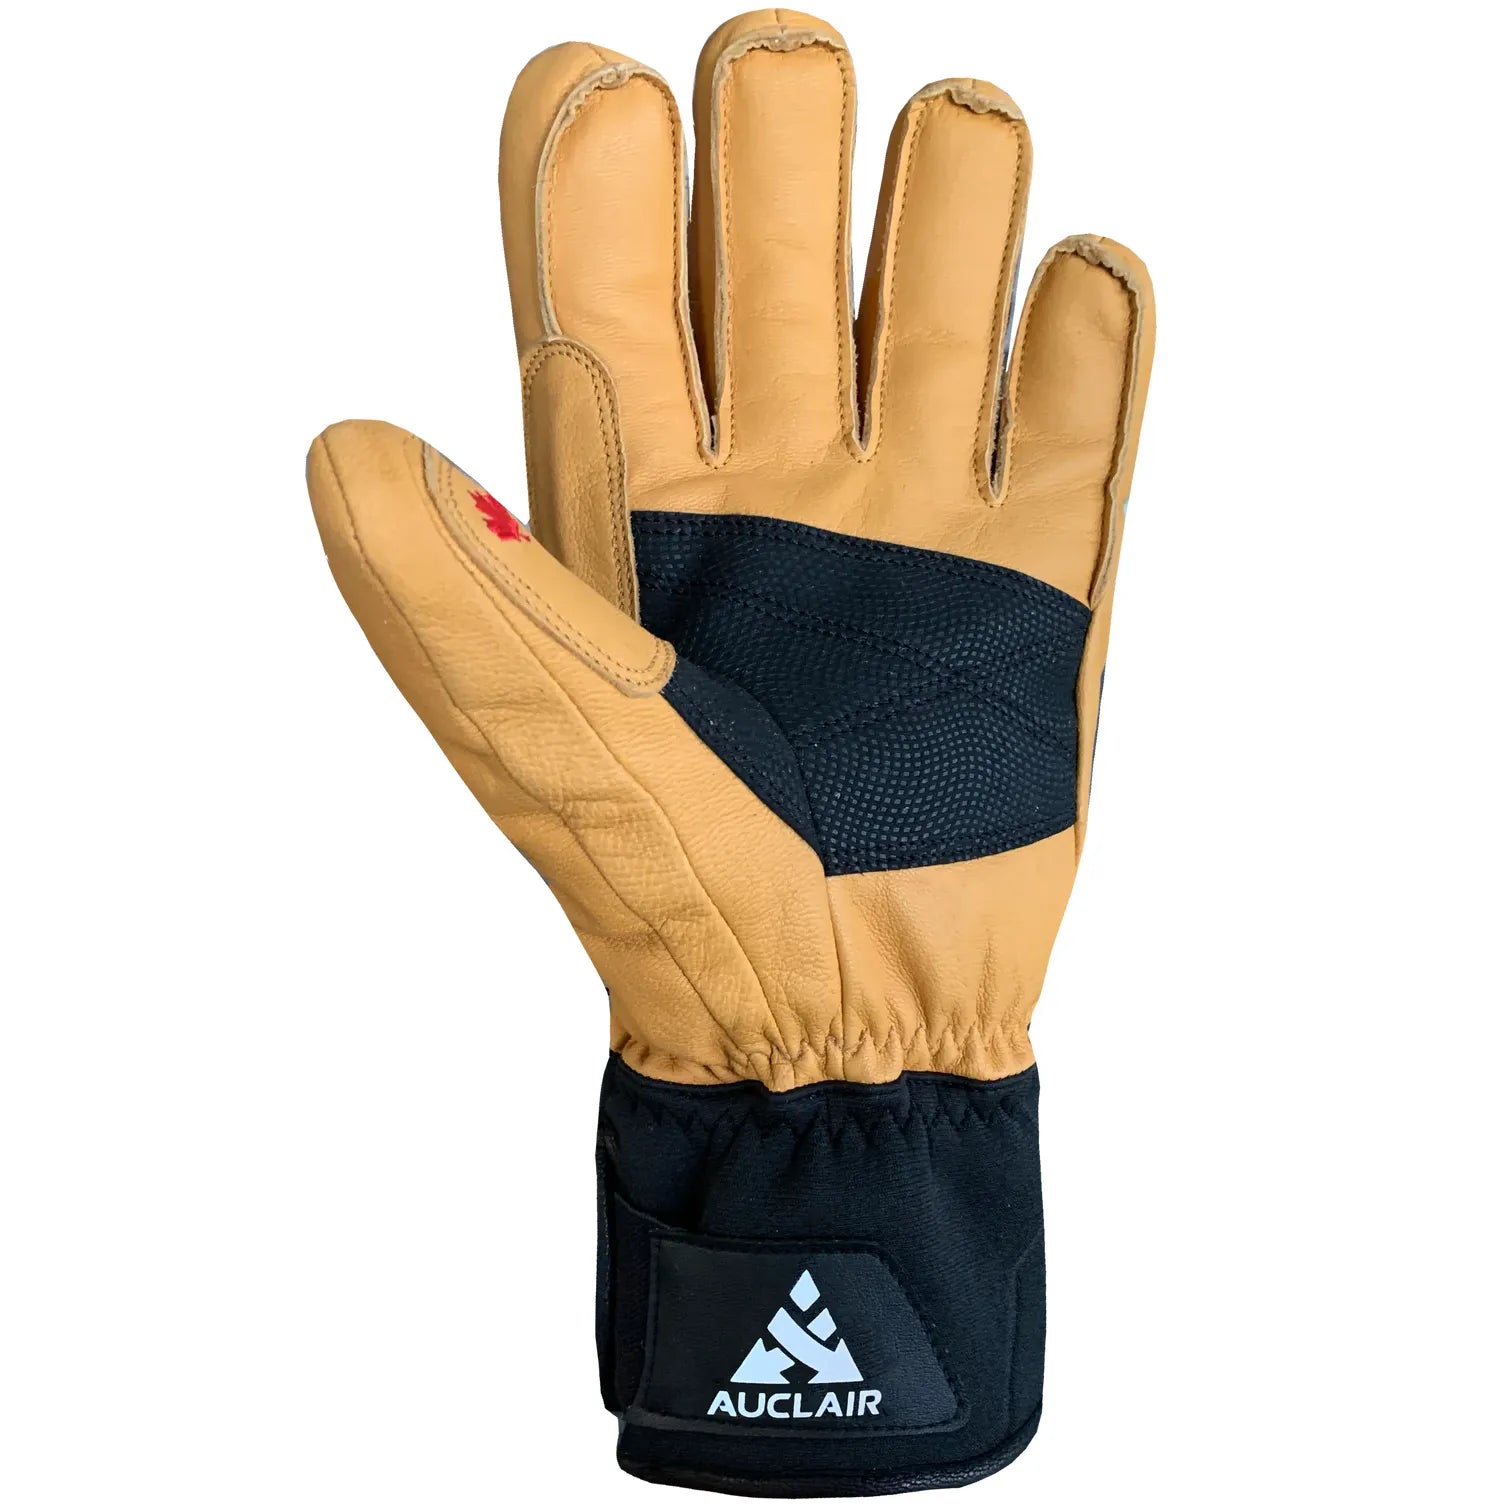 Outseam Gloves for Men's